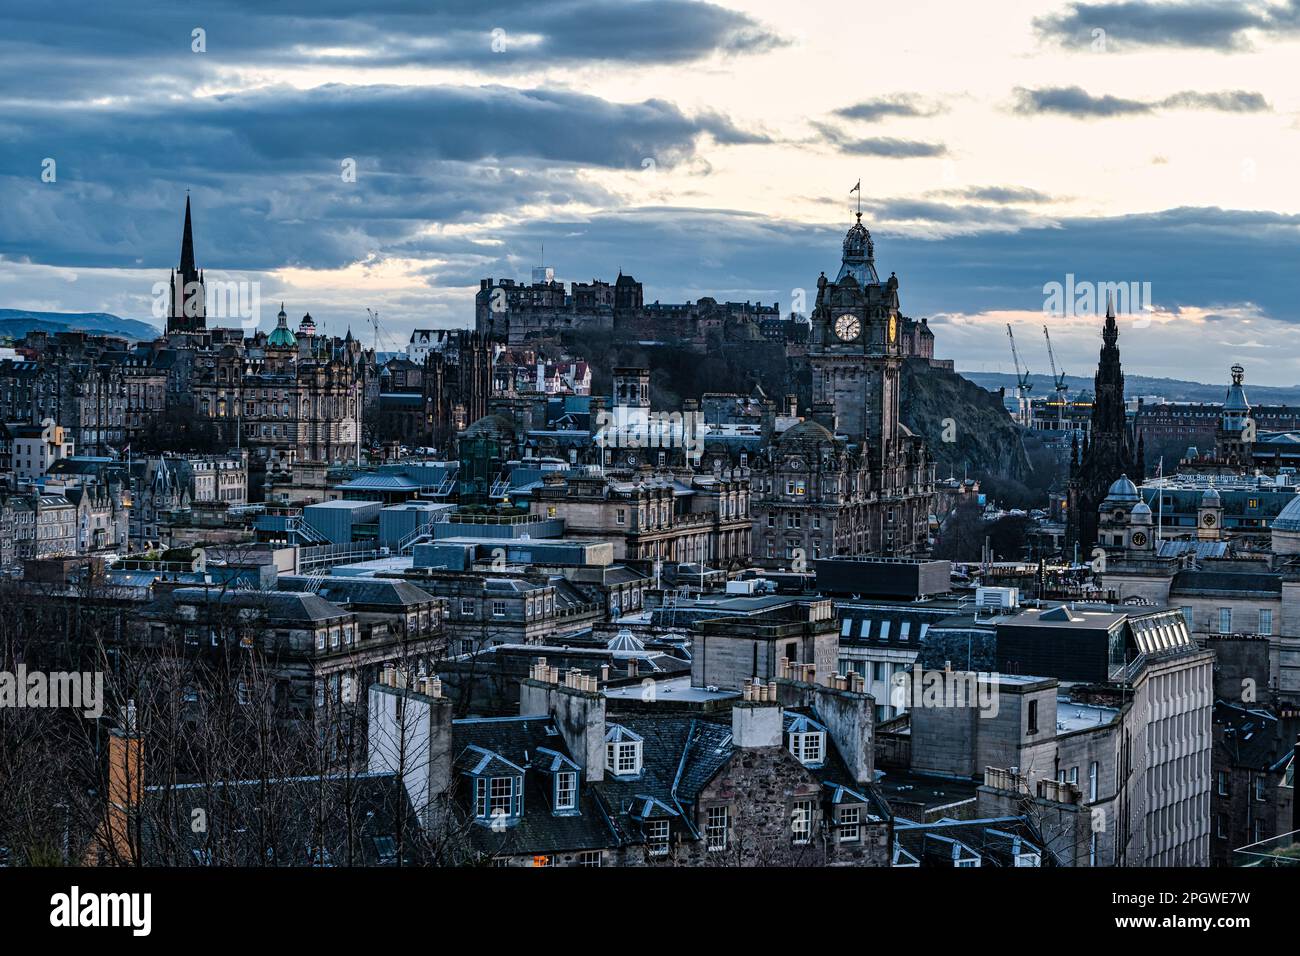 Vista sui tetti del centro città al tramonto con la torre dell'orologio Balmoral e il castello di Edimburgo, Scozia, Regno Unito Foto Stock